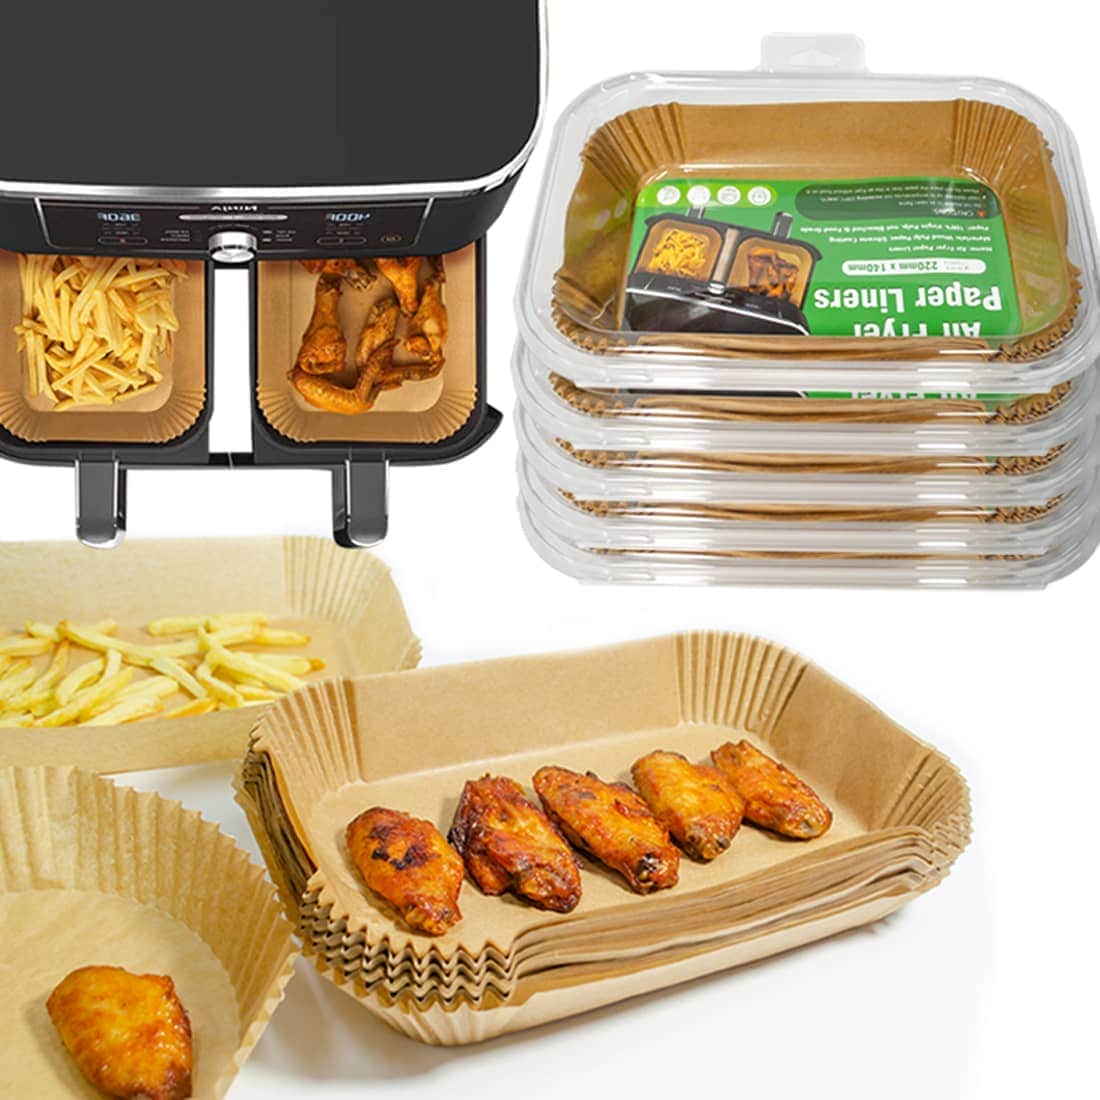 Air Fryer Disposable Paper Liner Rectangular for Ninja Foodi Dual Basket  8QT 10QT, 100Pcs Rectangle Parchment Paper liners for DZ201,DZ401, FG551